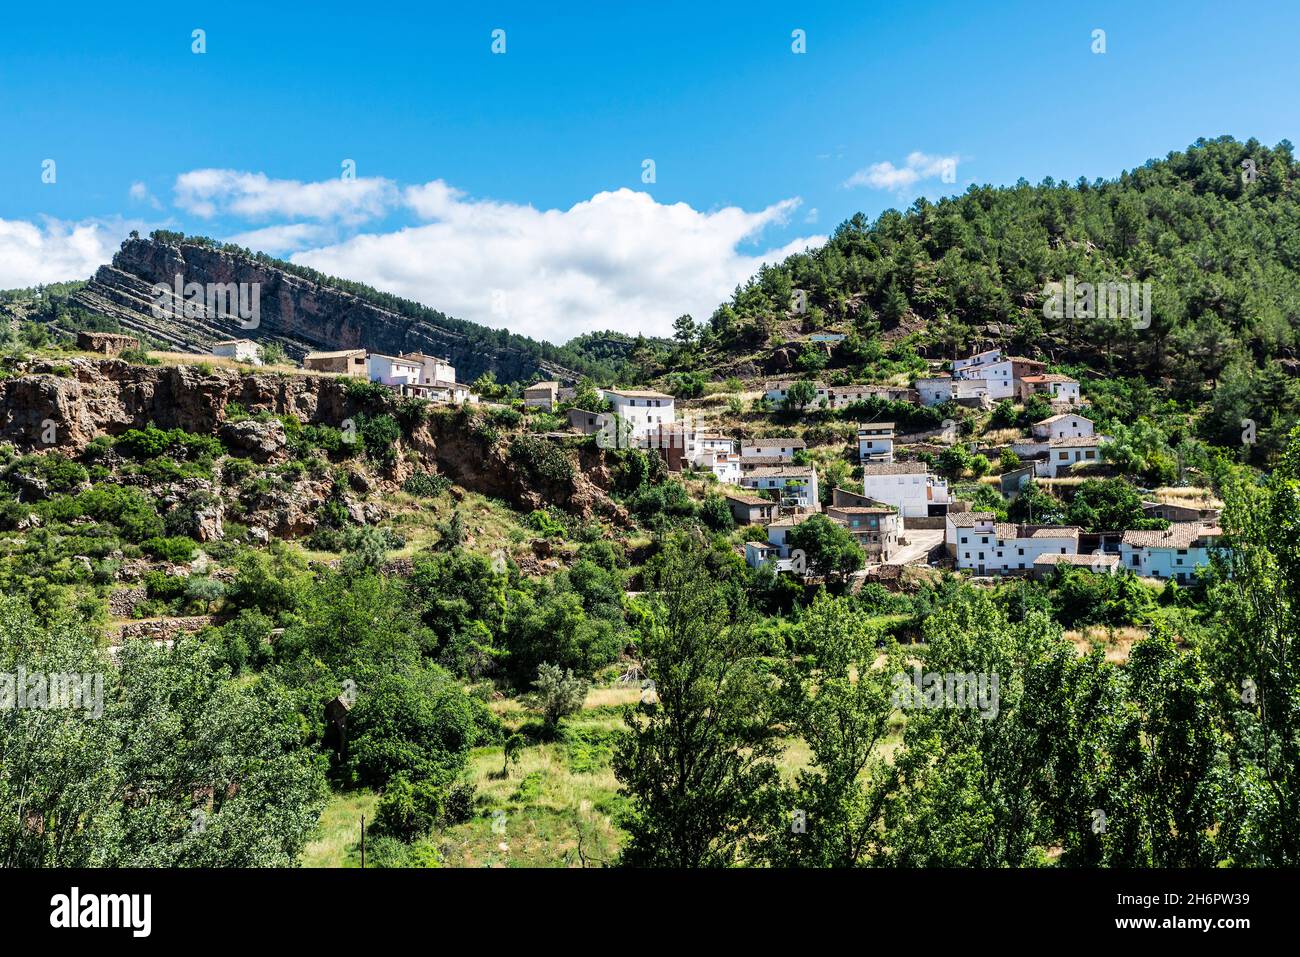 Town on a mountain in Montanejos, Castellon, Land of Valencia, Spain Stock Photo